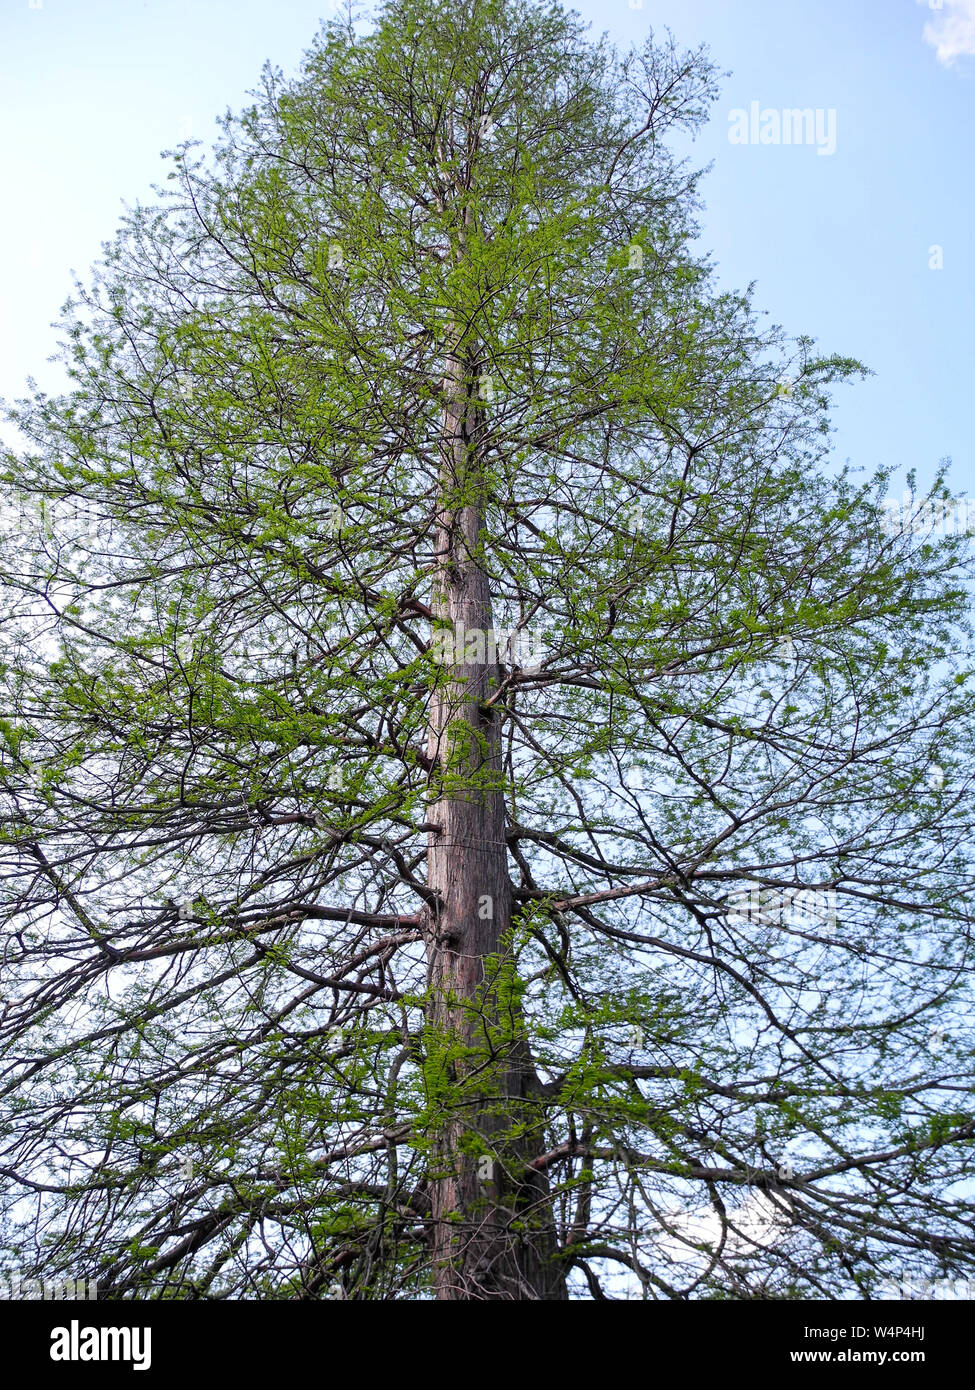 Arbre de conifères, Pinophyta, dans les bois d'Allemagne Banque D'Images